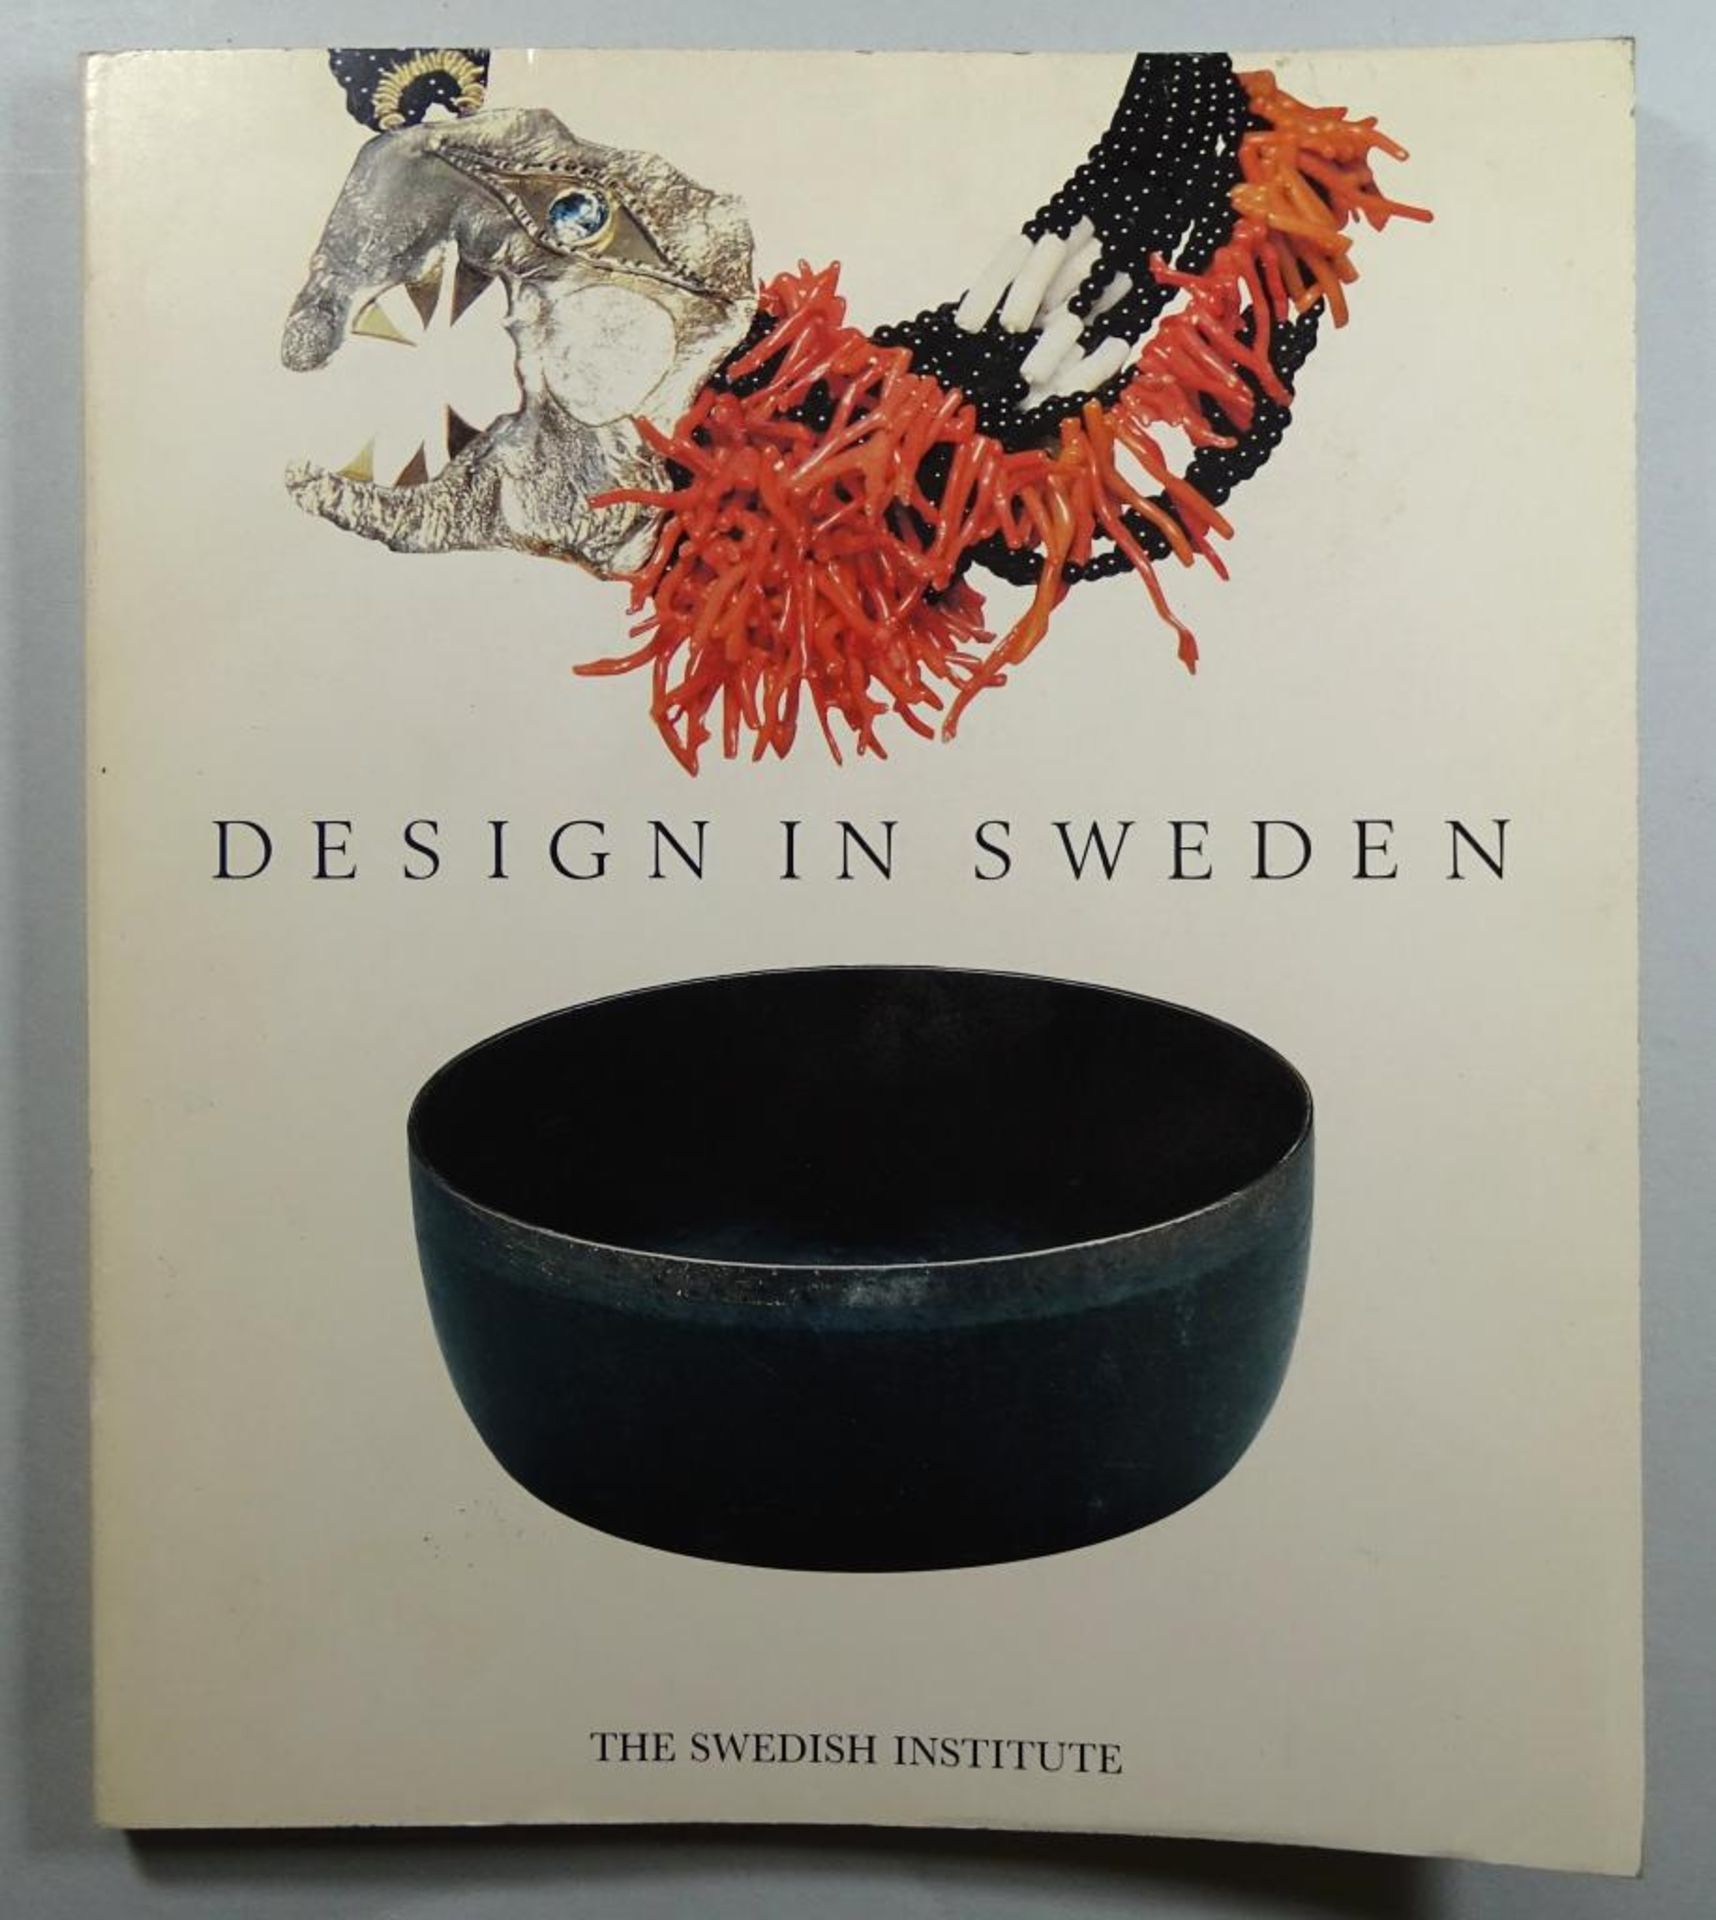 "Design in Sweden", The Swedish Institute, 1985, mit 142 Seiten